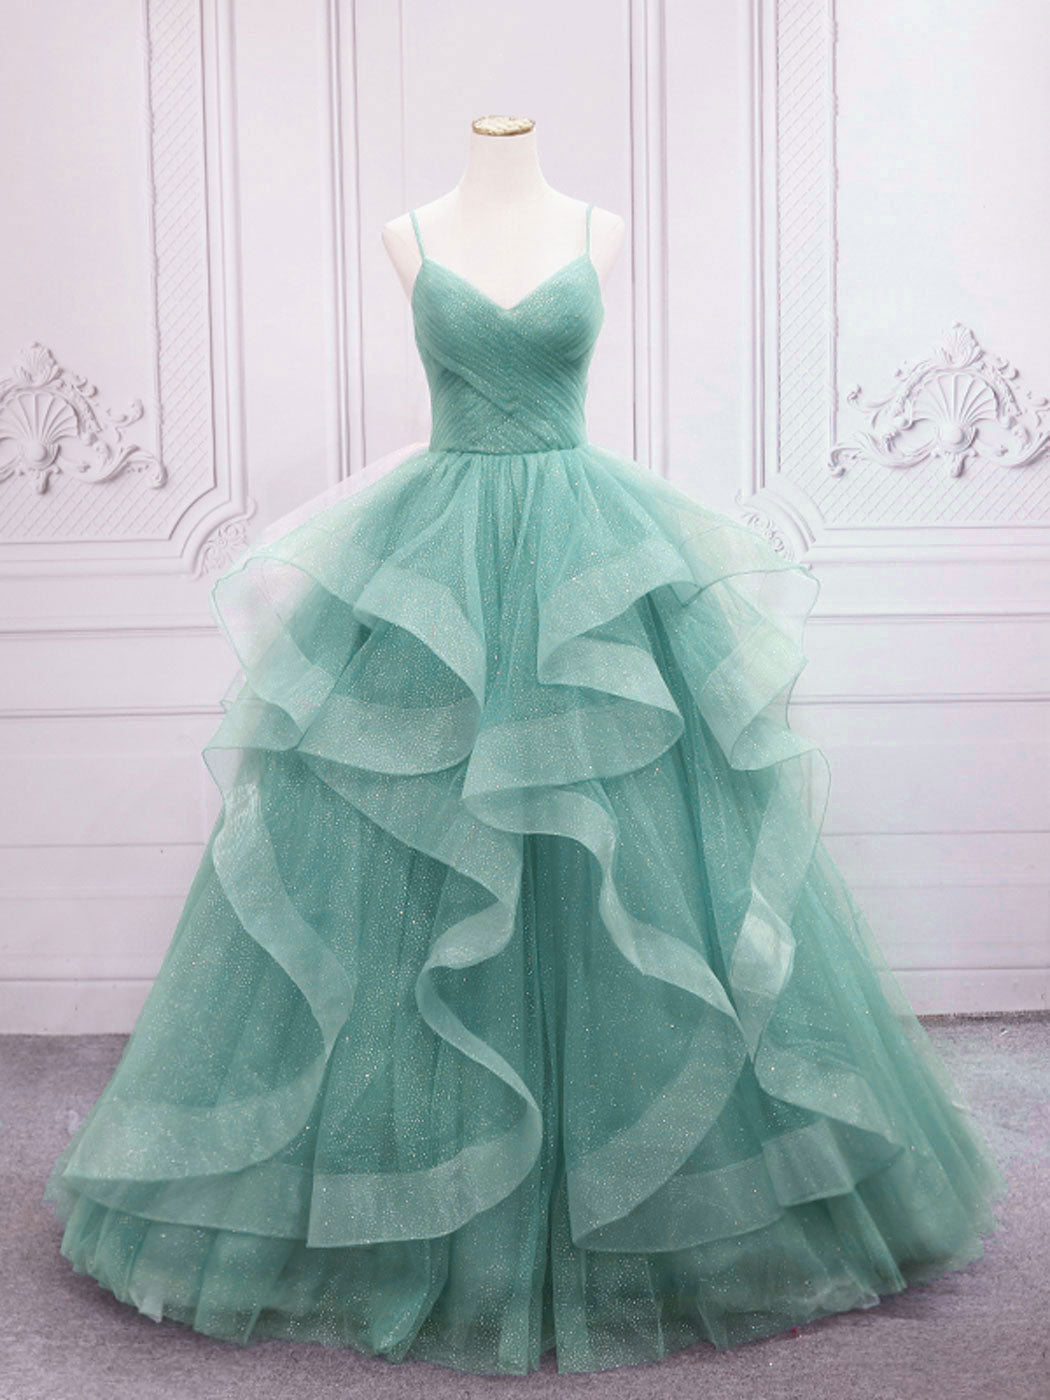 Prom Dresses Blue Light, Green V Neck Tulle Long Prom Dress, Green Sweet 16 Dress